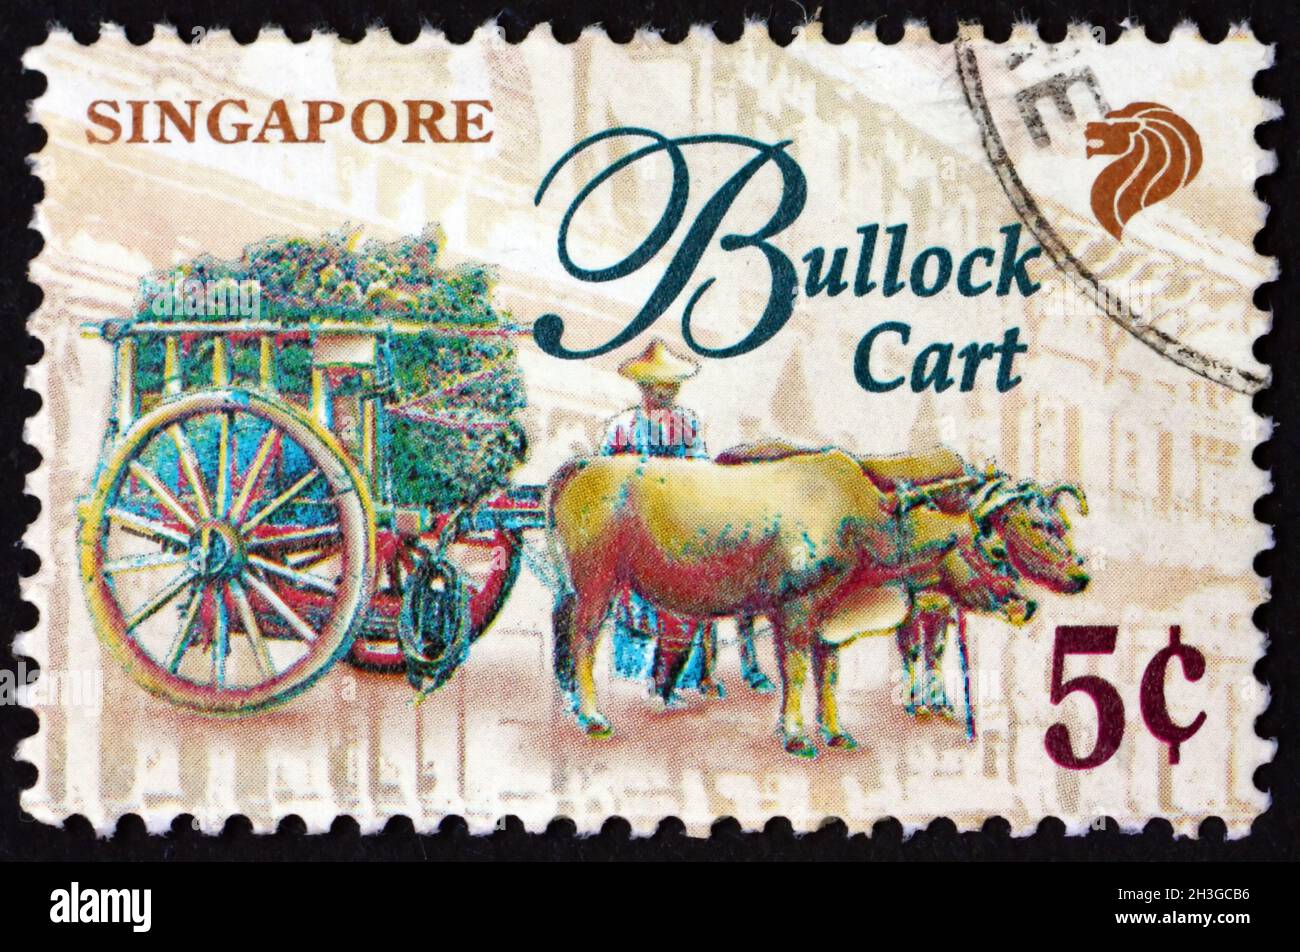 SINGAPOUR - VERS 1997 : un timbre imprimé à Singapour montre un chariot à boulettes, un véhicule à deux ou quatre roues tiré par oxen, vers 1997 Banque D'Images